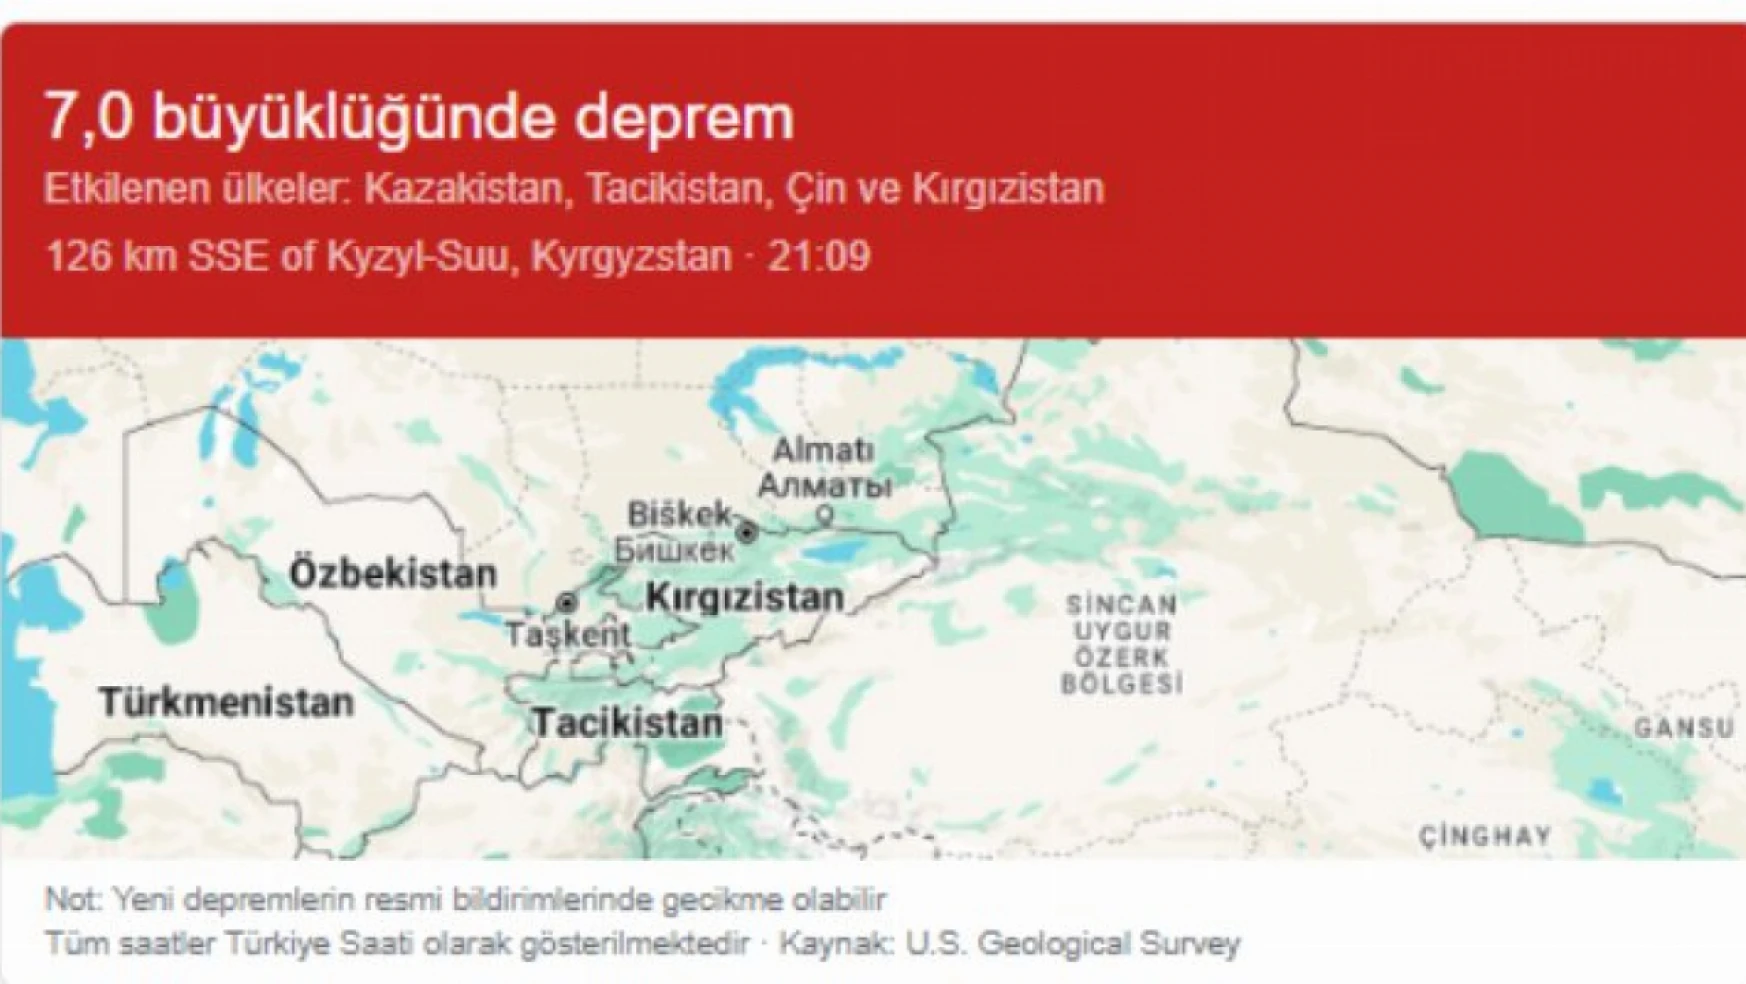 Kazakistan'da hissedilen depremde 44 kişi yaralandı